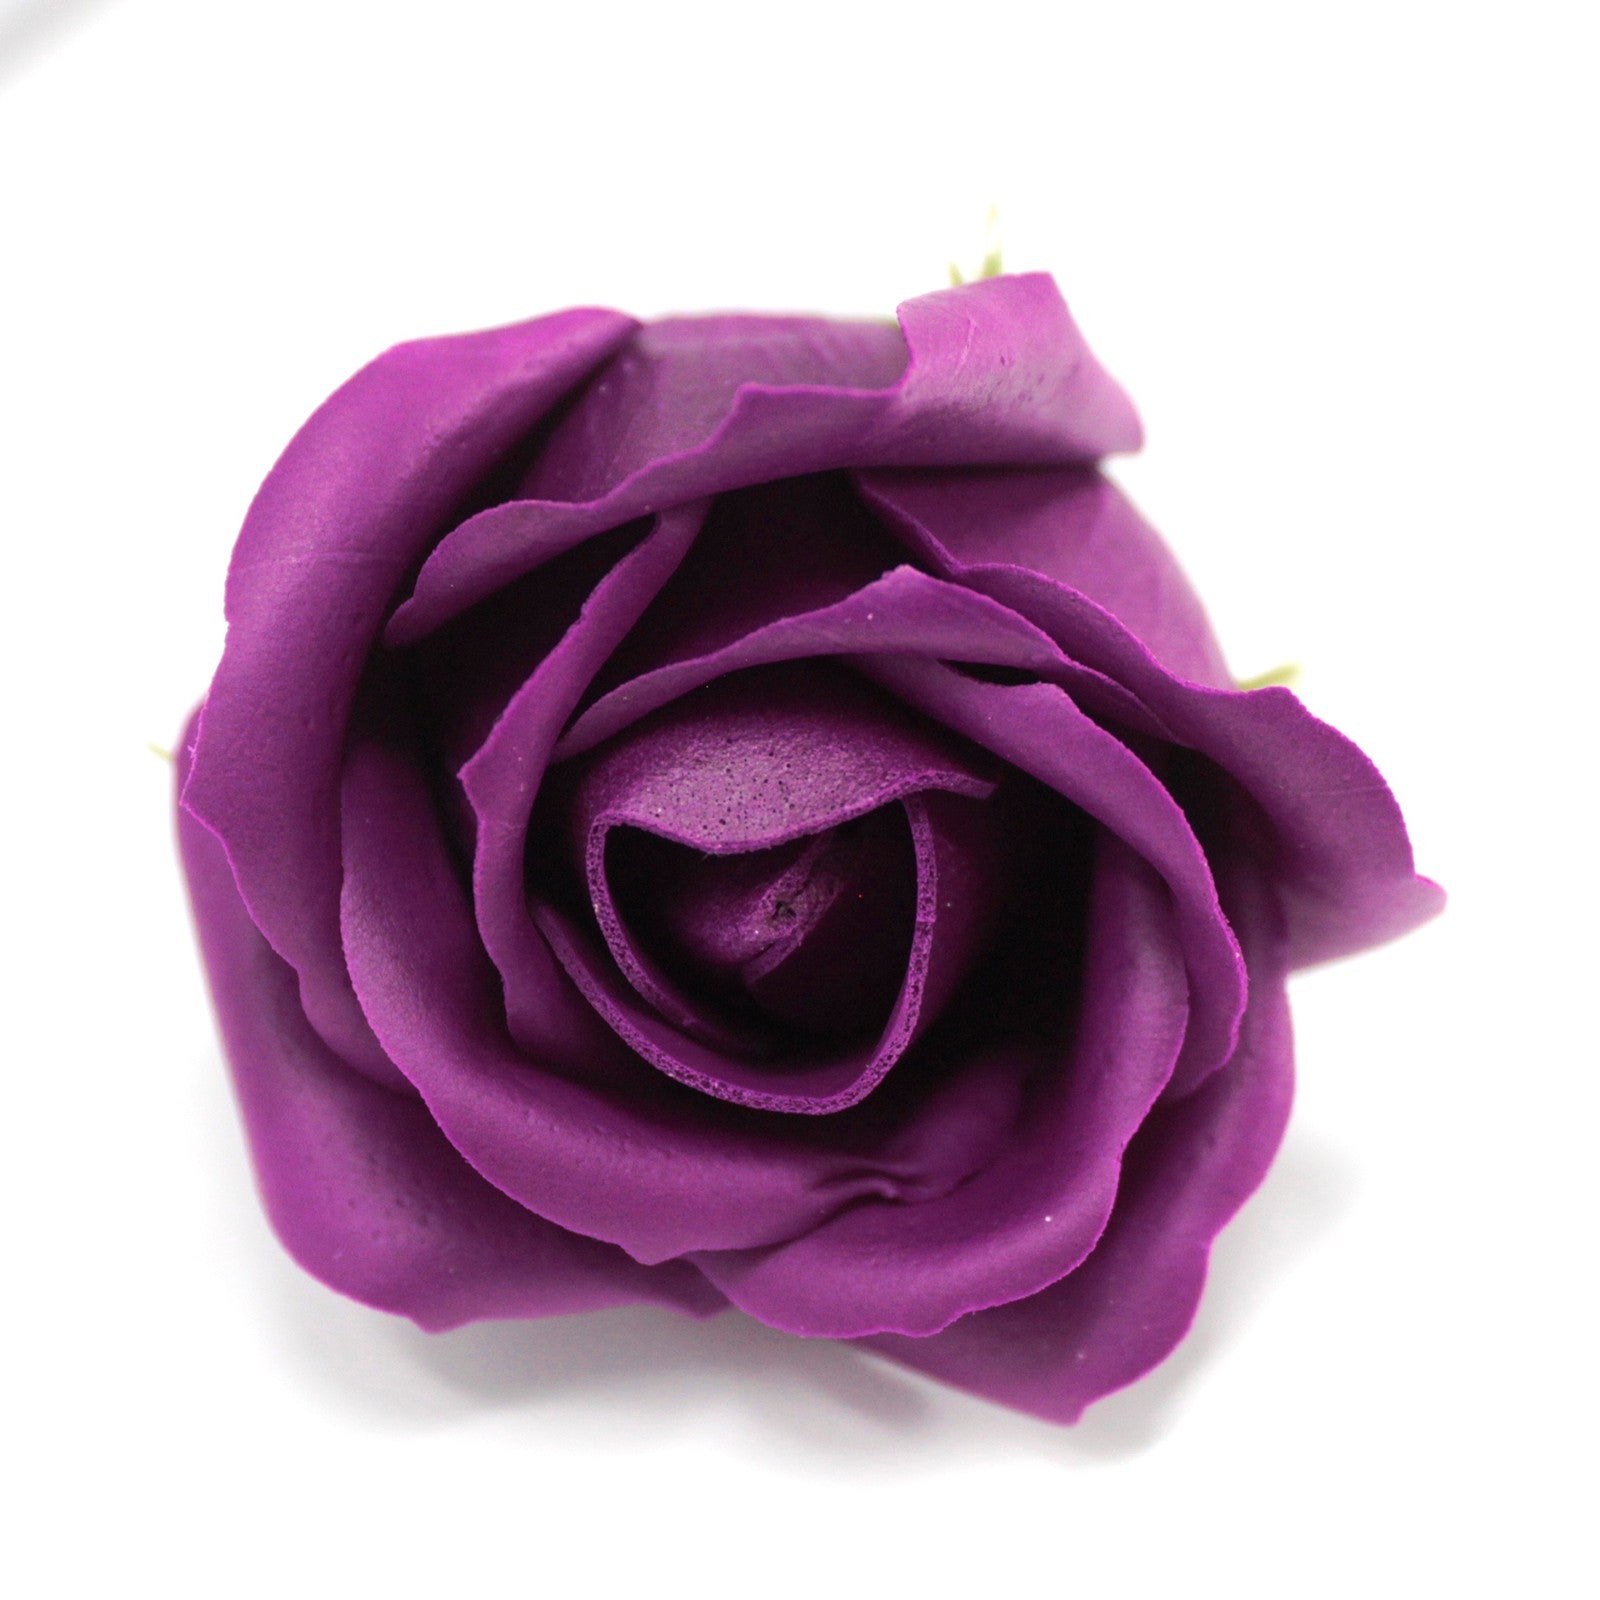 View Craft Soap Flowers Med Rose Deep Violet information